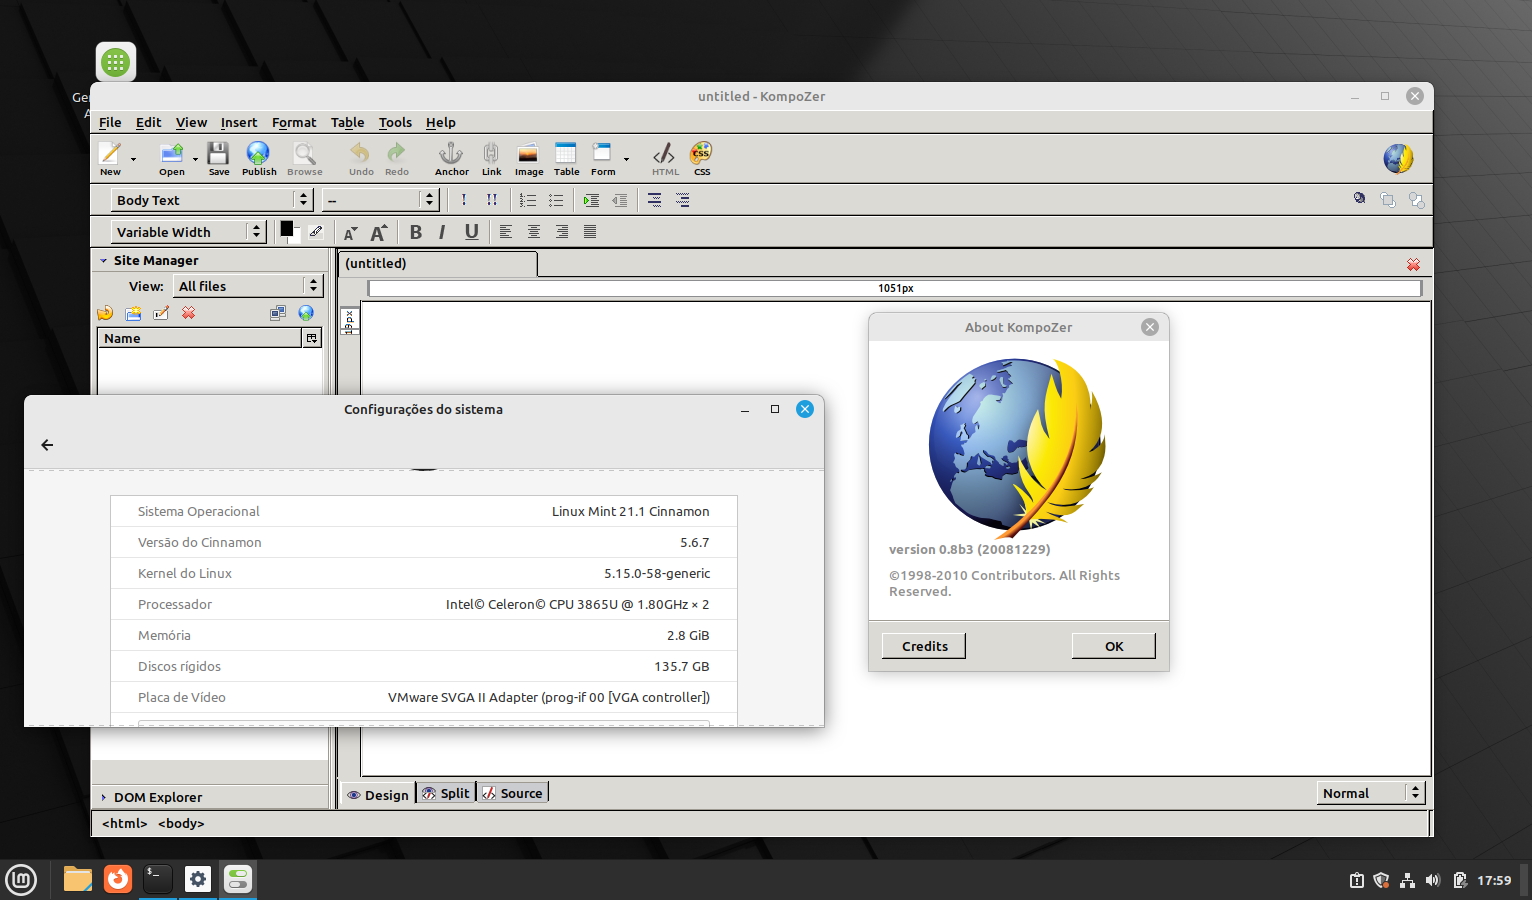 lançador de jogos ScummVM no Linux via Snap - veja como instalar